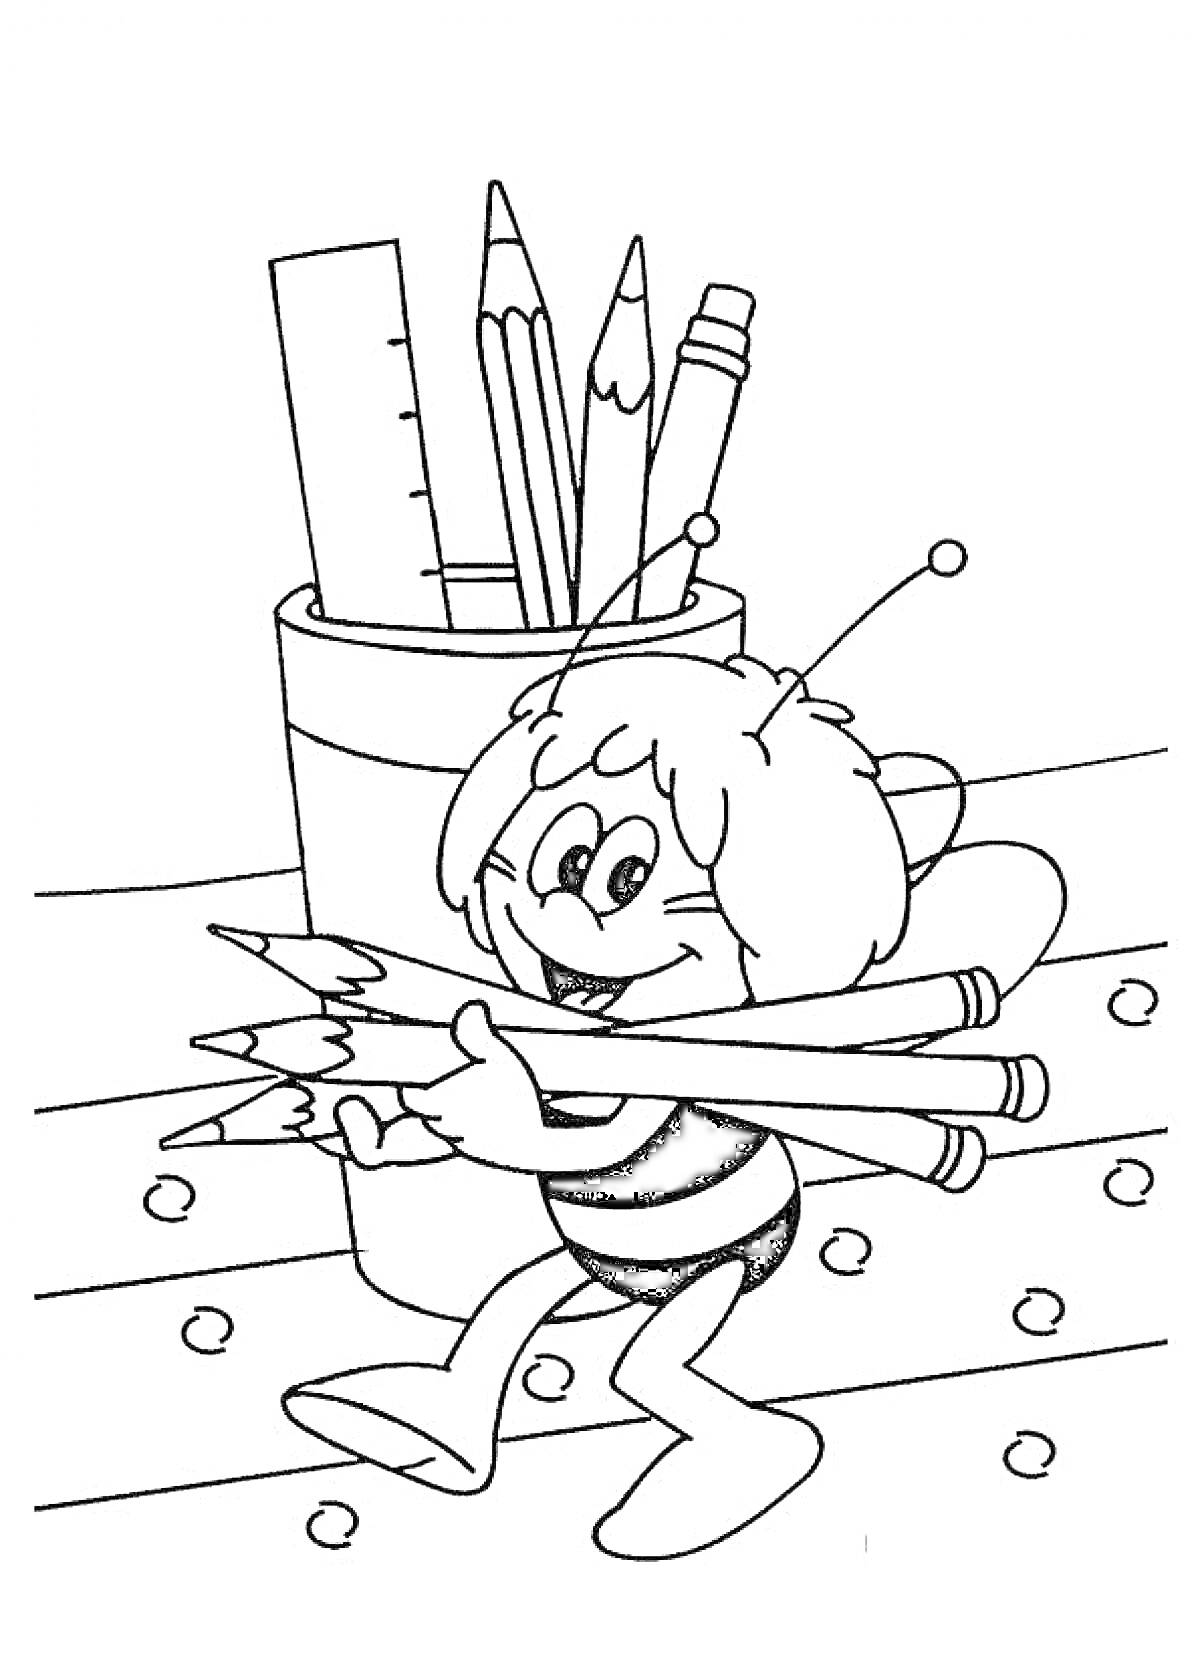 Пчёлка несёт карандаши возле стакана с карандашами, линейкой и точилкой